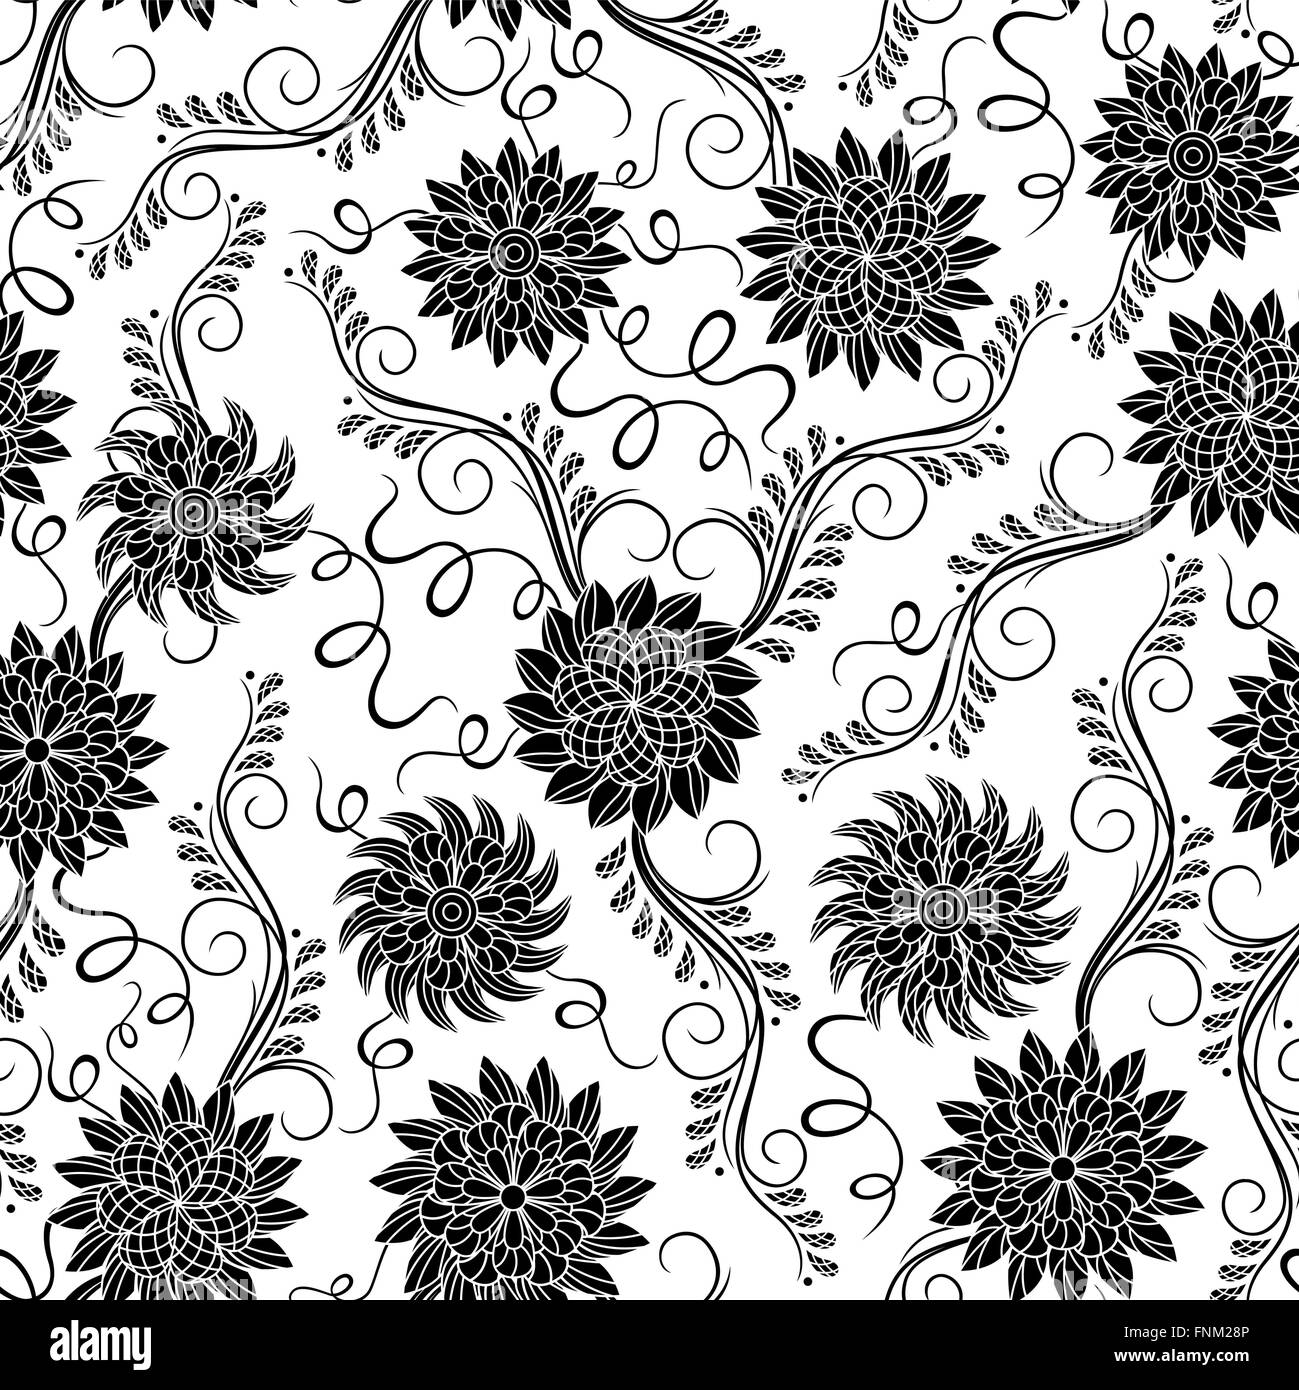 Schwarz / weiß nahtlose Muster mit Schablone florale Elemente, Hand ertrinken Vektorgrafiken Stock Vektor